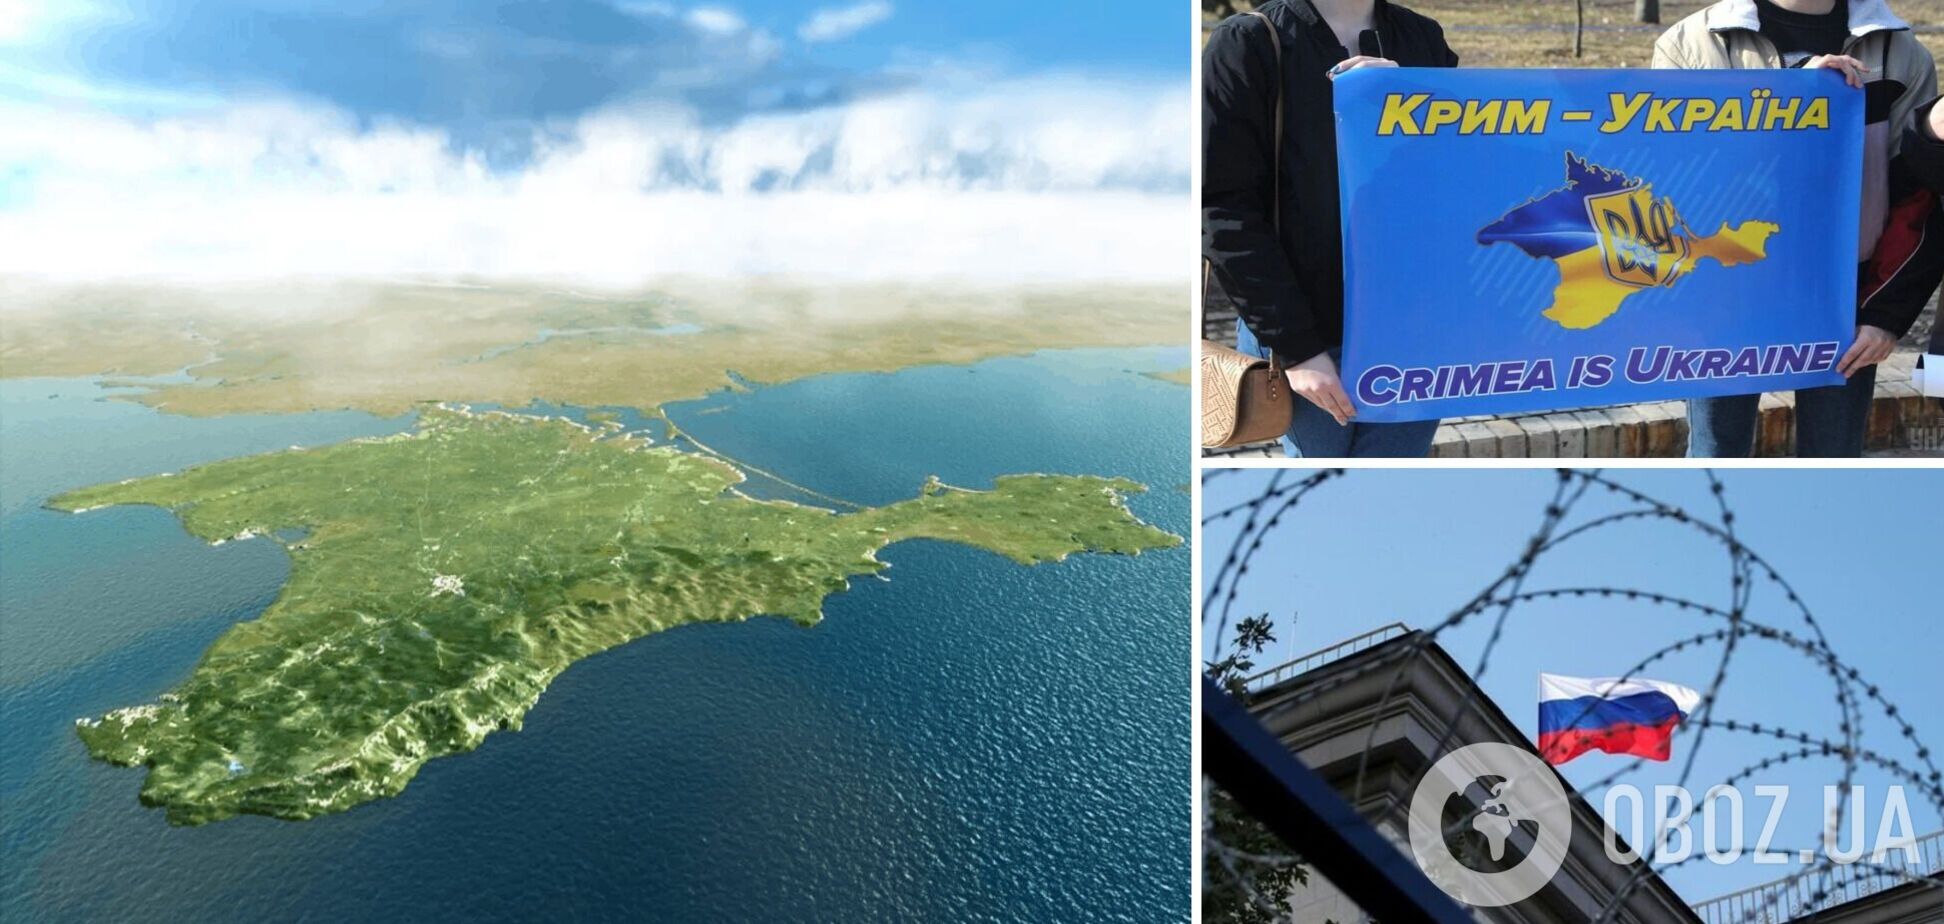 Крым лидирует в 'дискредитации' армии РФ среди подконтрольных Москве территорий: за что оккупанты штрафуют украинцев